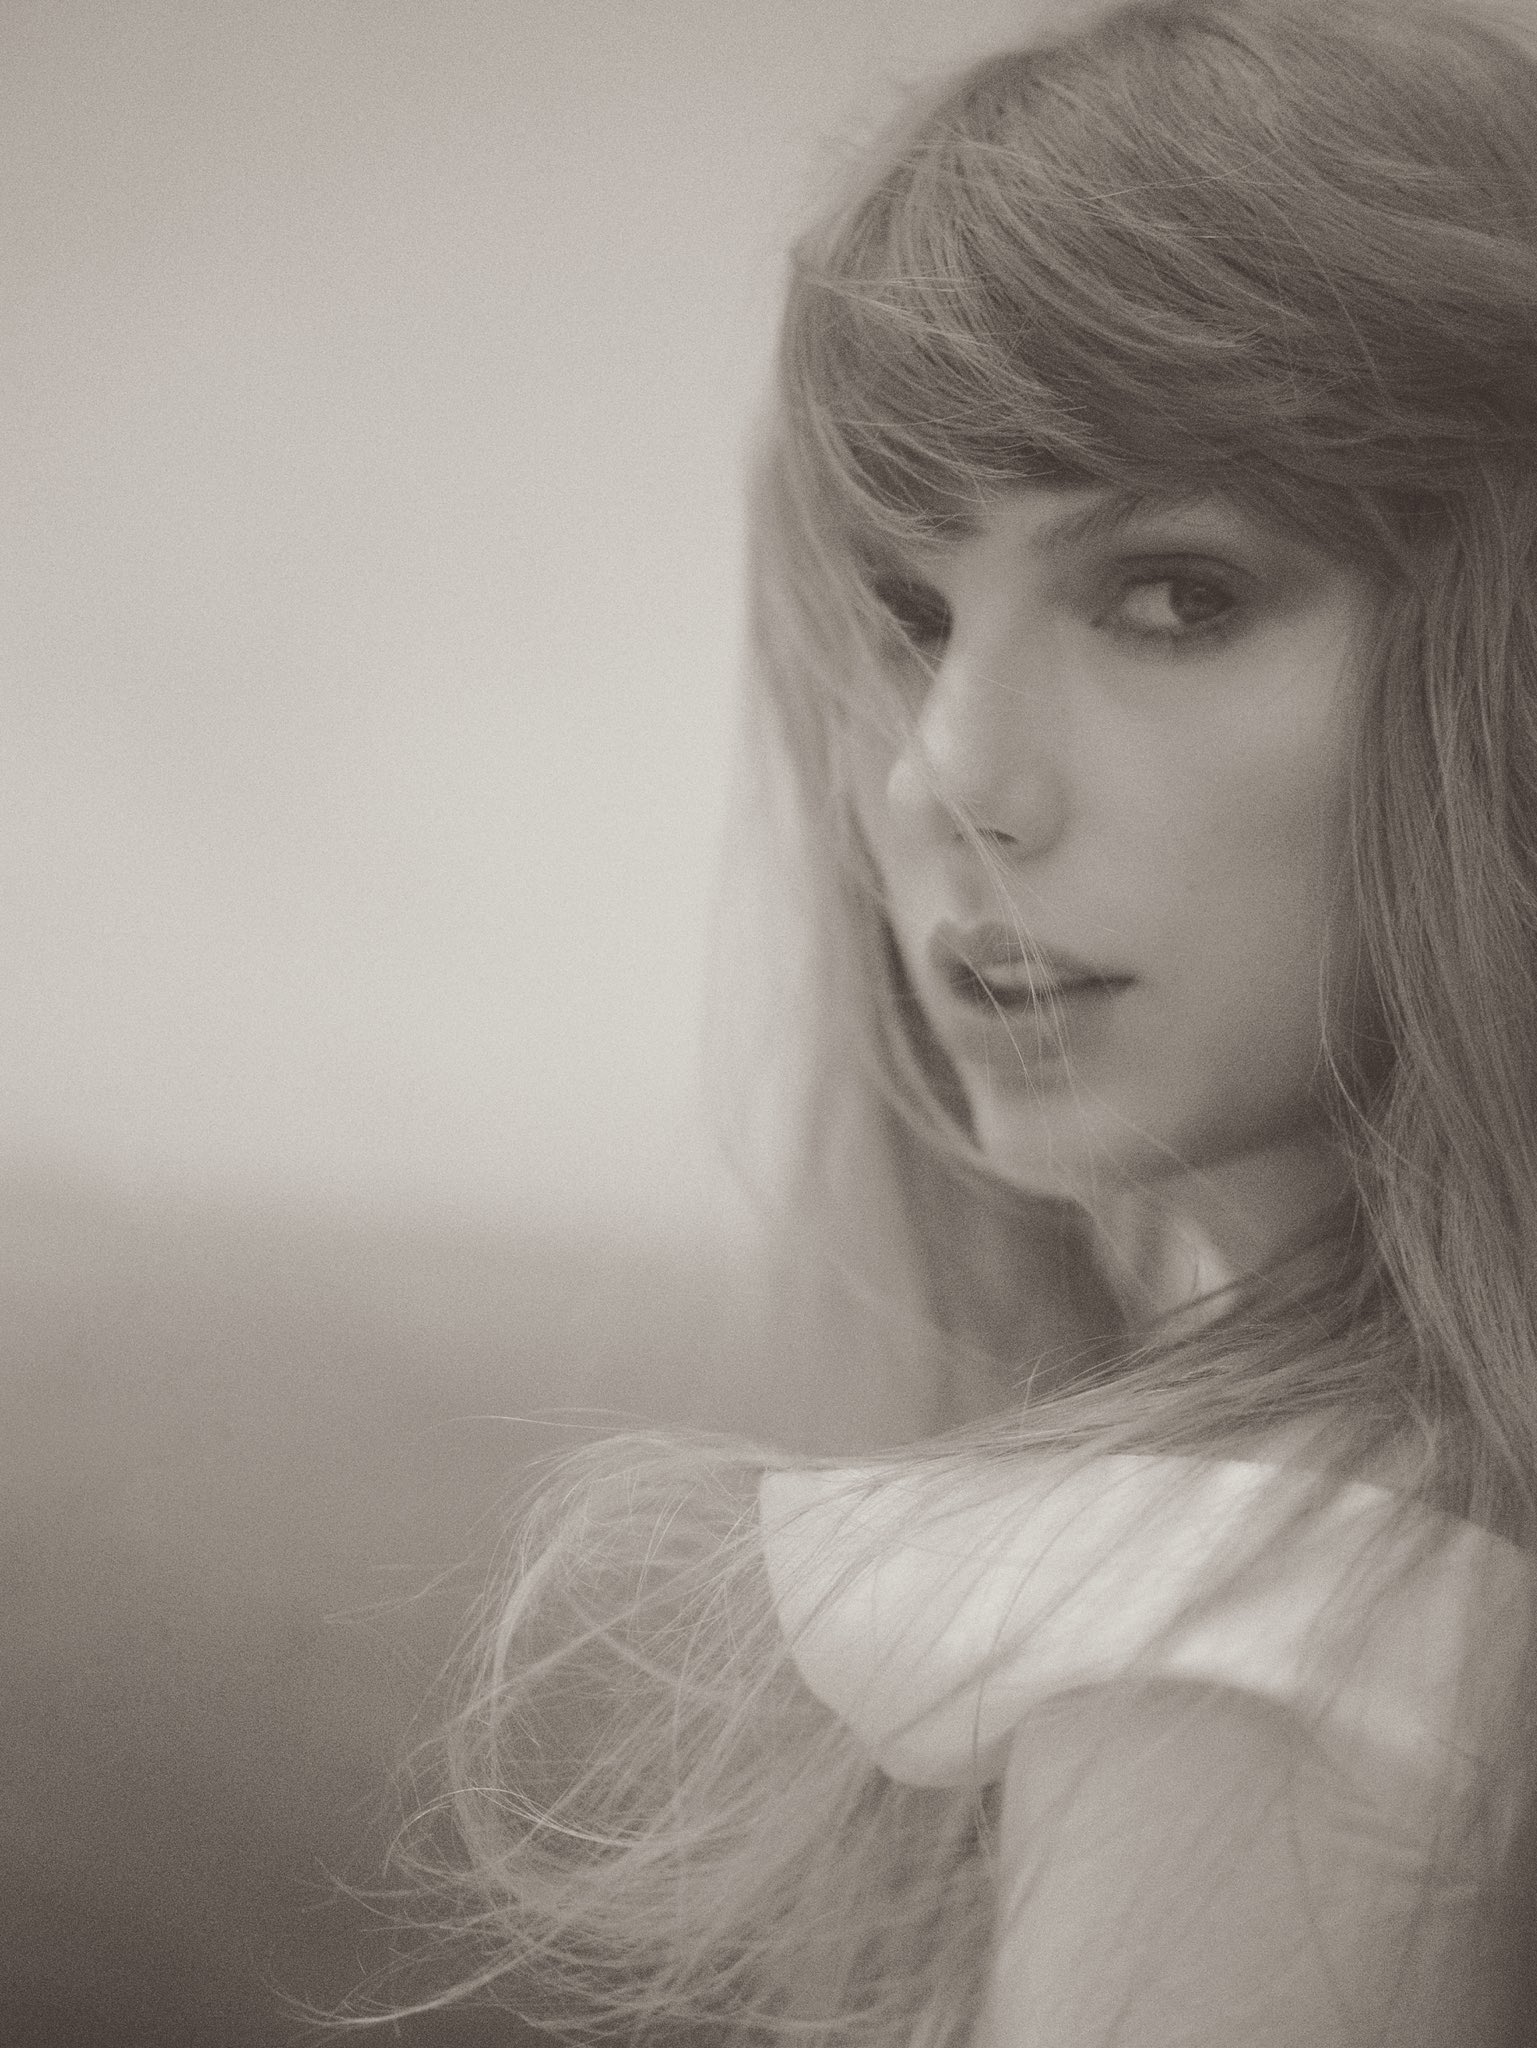 Album mới của Taylor Swift: Gọi Joe Alwyn là "chồng", kể chuyện bị "đâm sau lưng", 16 ca khúc quá hay lập tức được chấm điểm tuyệt đối!